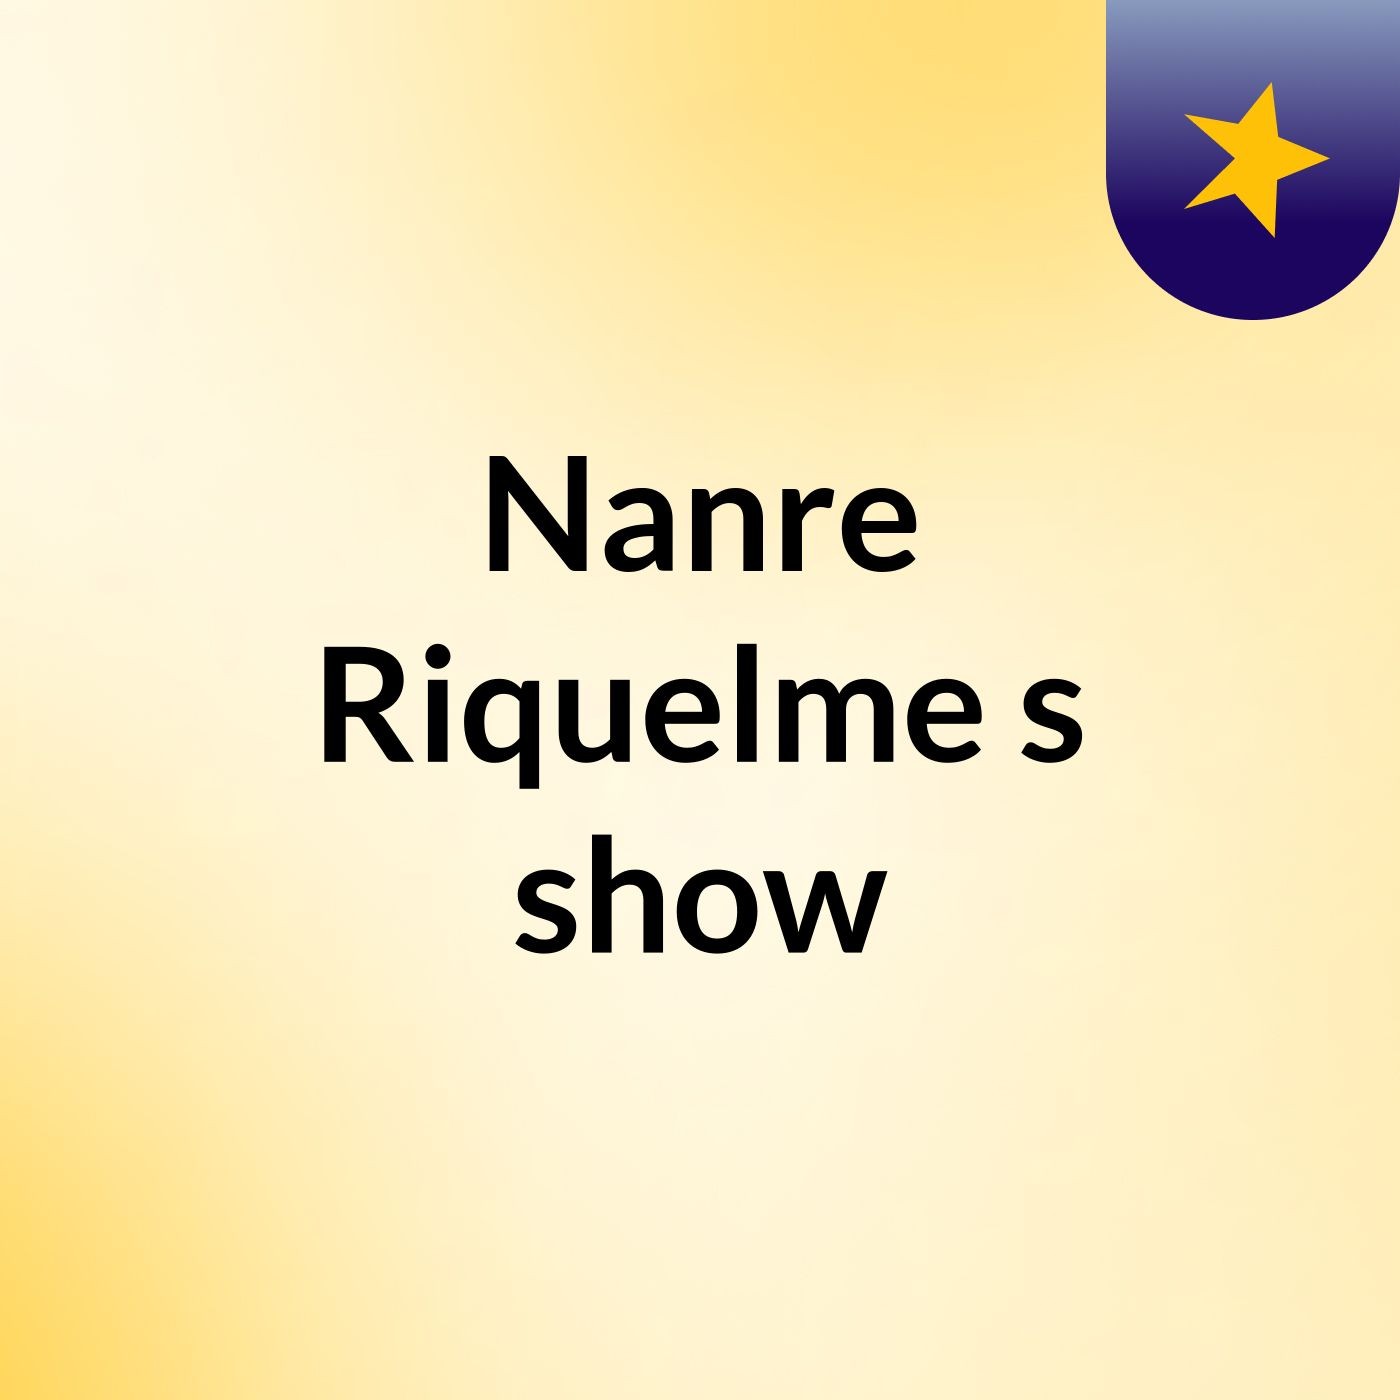 Nanre Riquelme's show